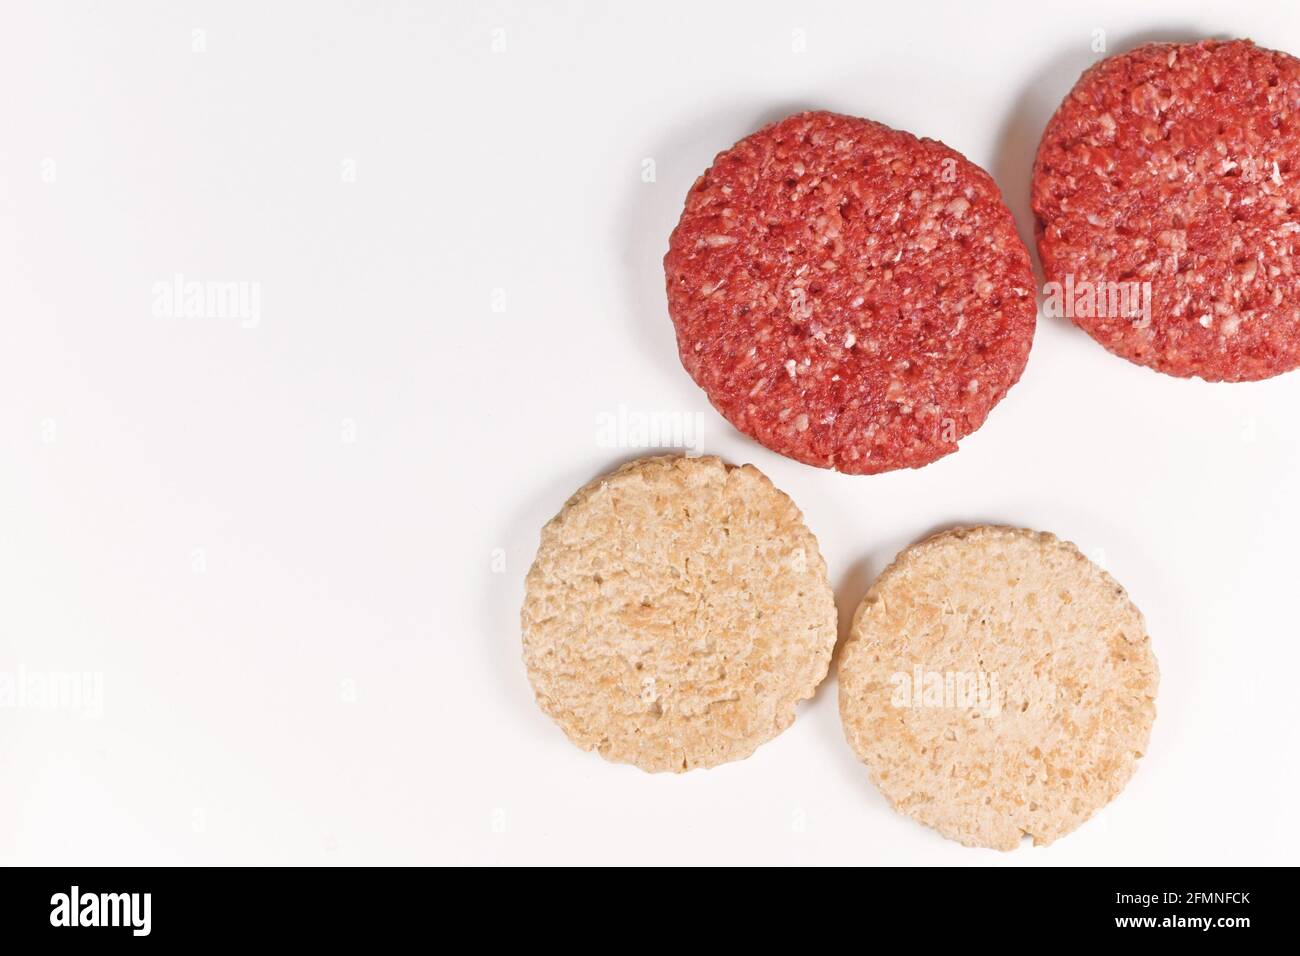 Vergleich von veganem Soja-Burger-Patty und echtem Fleisch patty Stockfoto